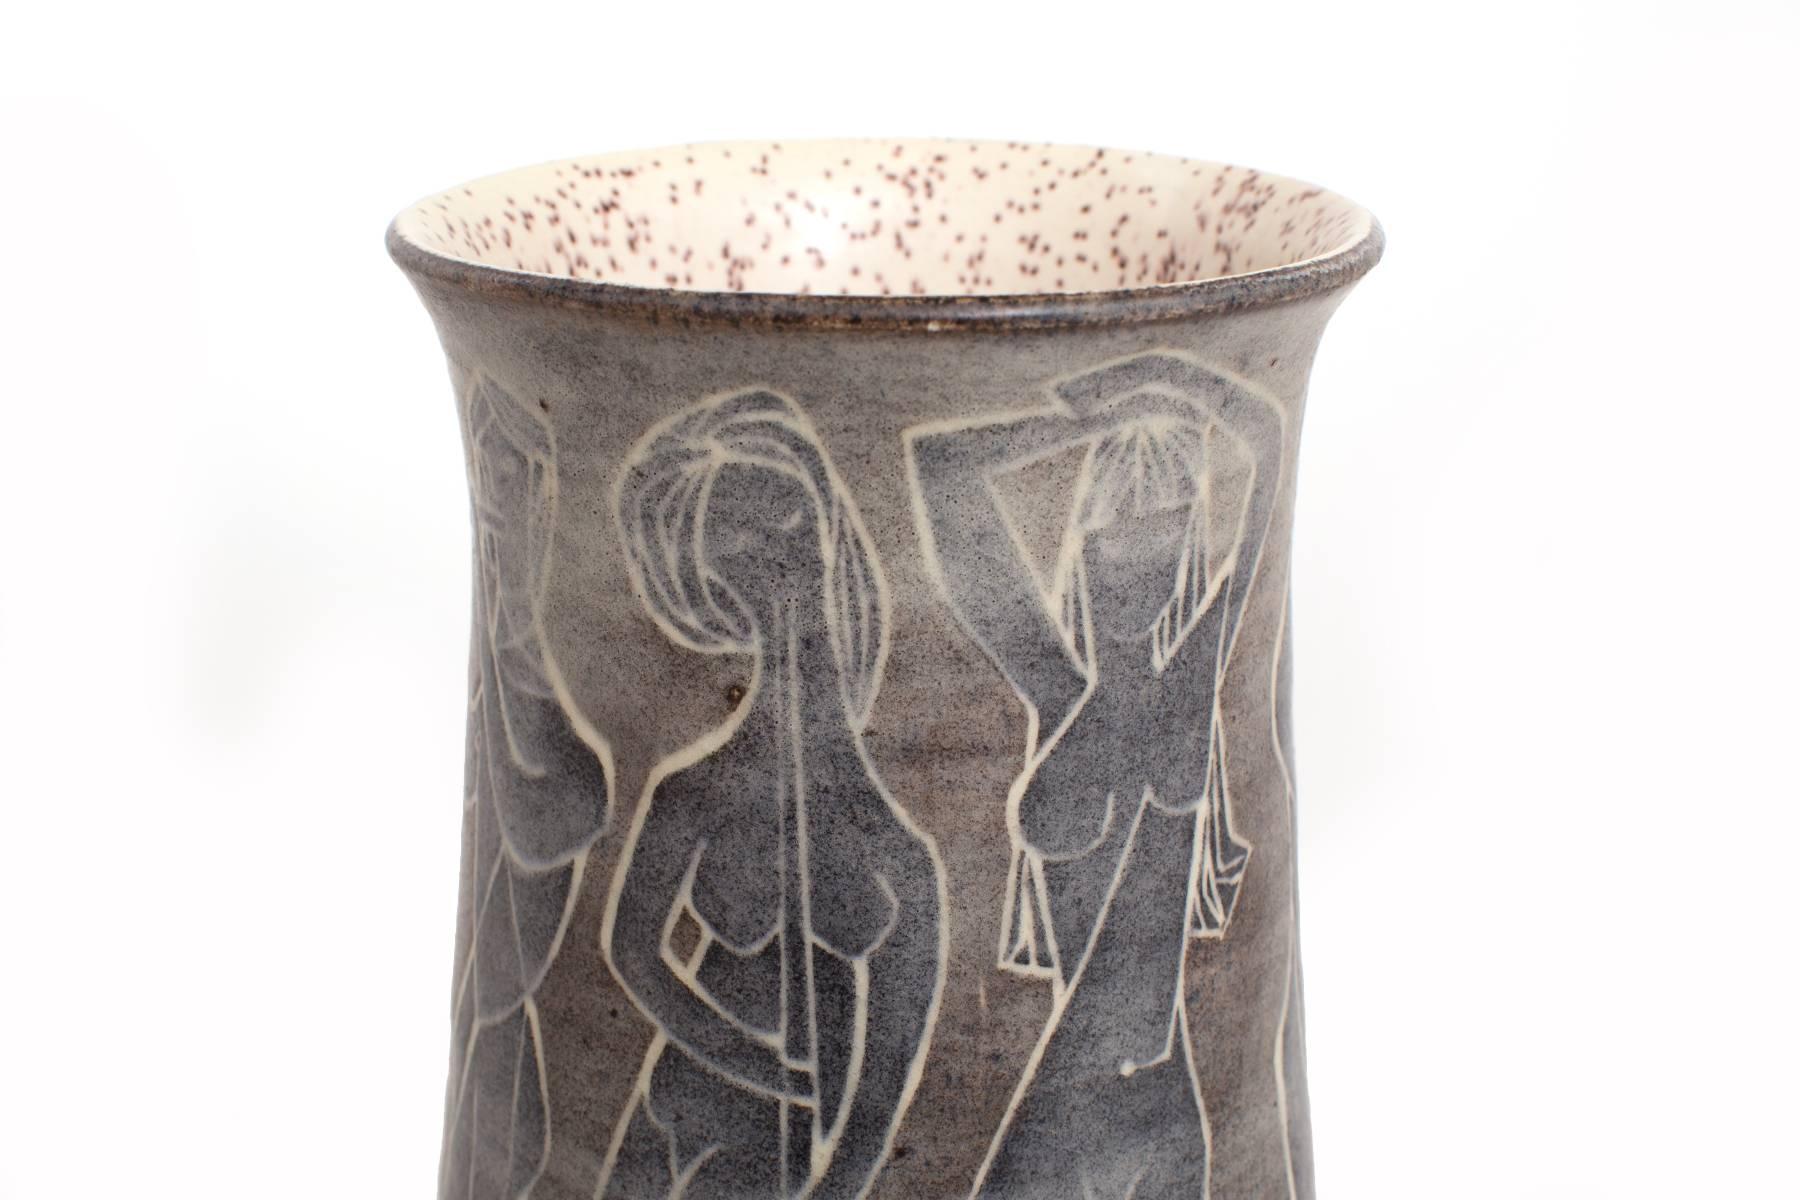 Vase en céramique émaillée de Marcello Fantoni, vers le début des années 1960. Ce fabuleux exemplaire présente des figures féminines peintes à la main sur le pourtour et une glaçure mouchetée à l'intérieur.